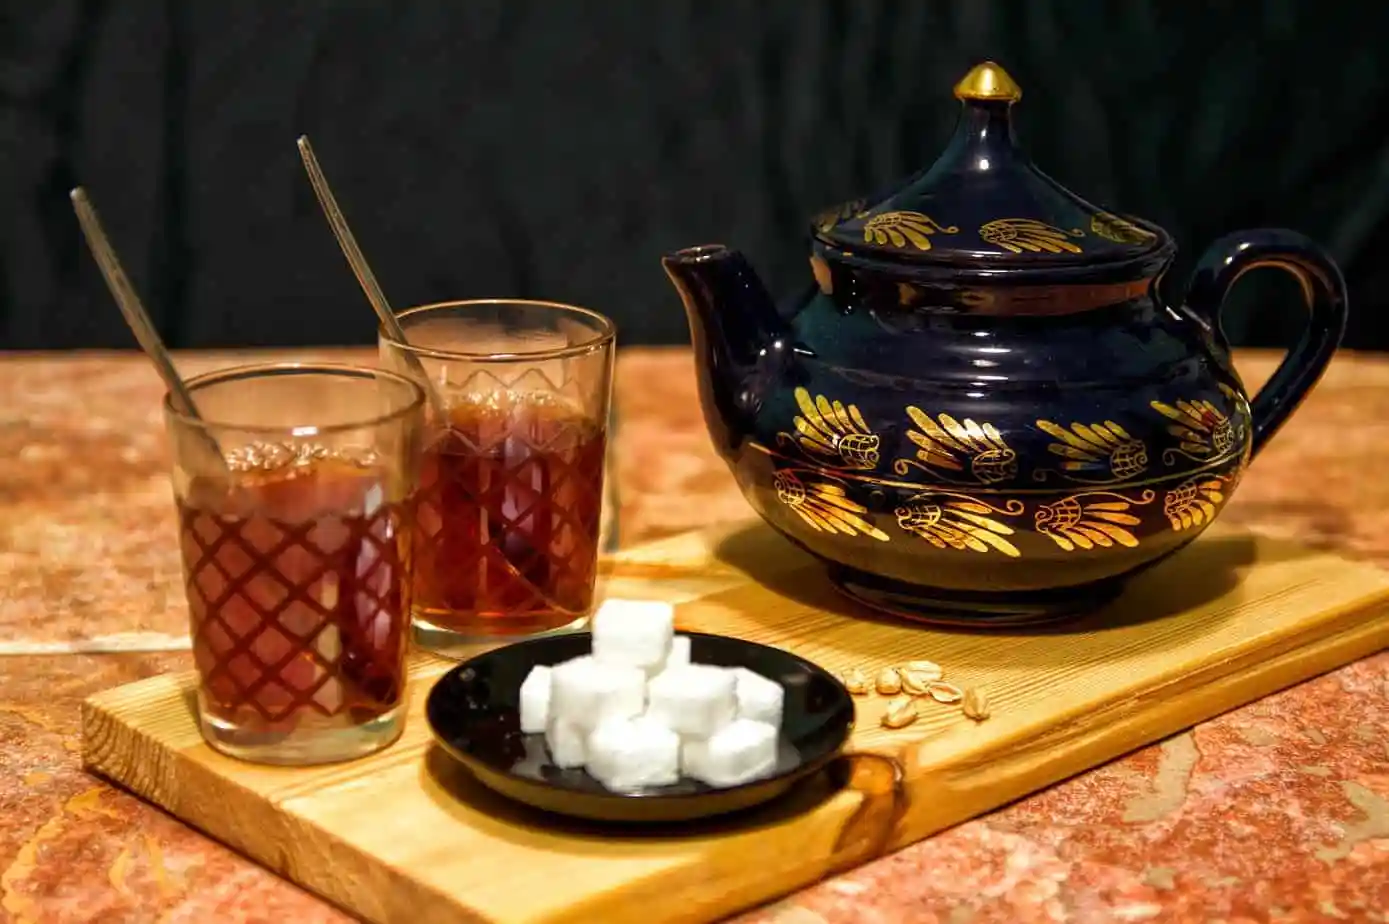 كوبان من الشاي الأسود على صينية خشبية يعرضان فوائد الشاي الأسود.